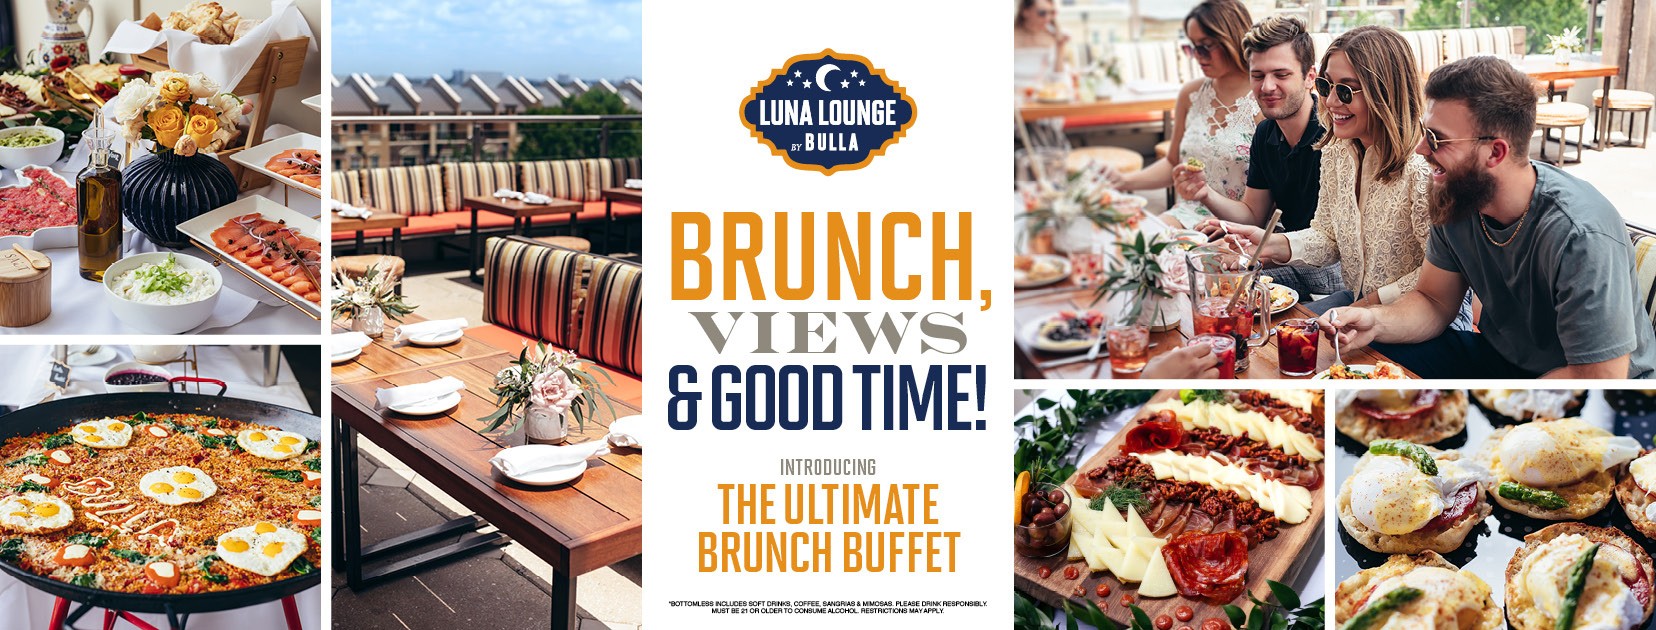 Luna Lounge Private Brunch Buffet